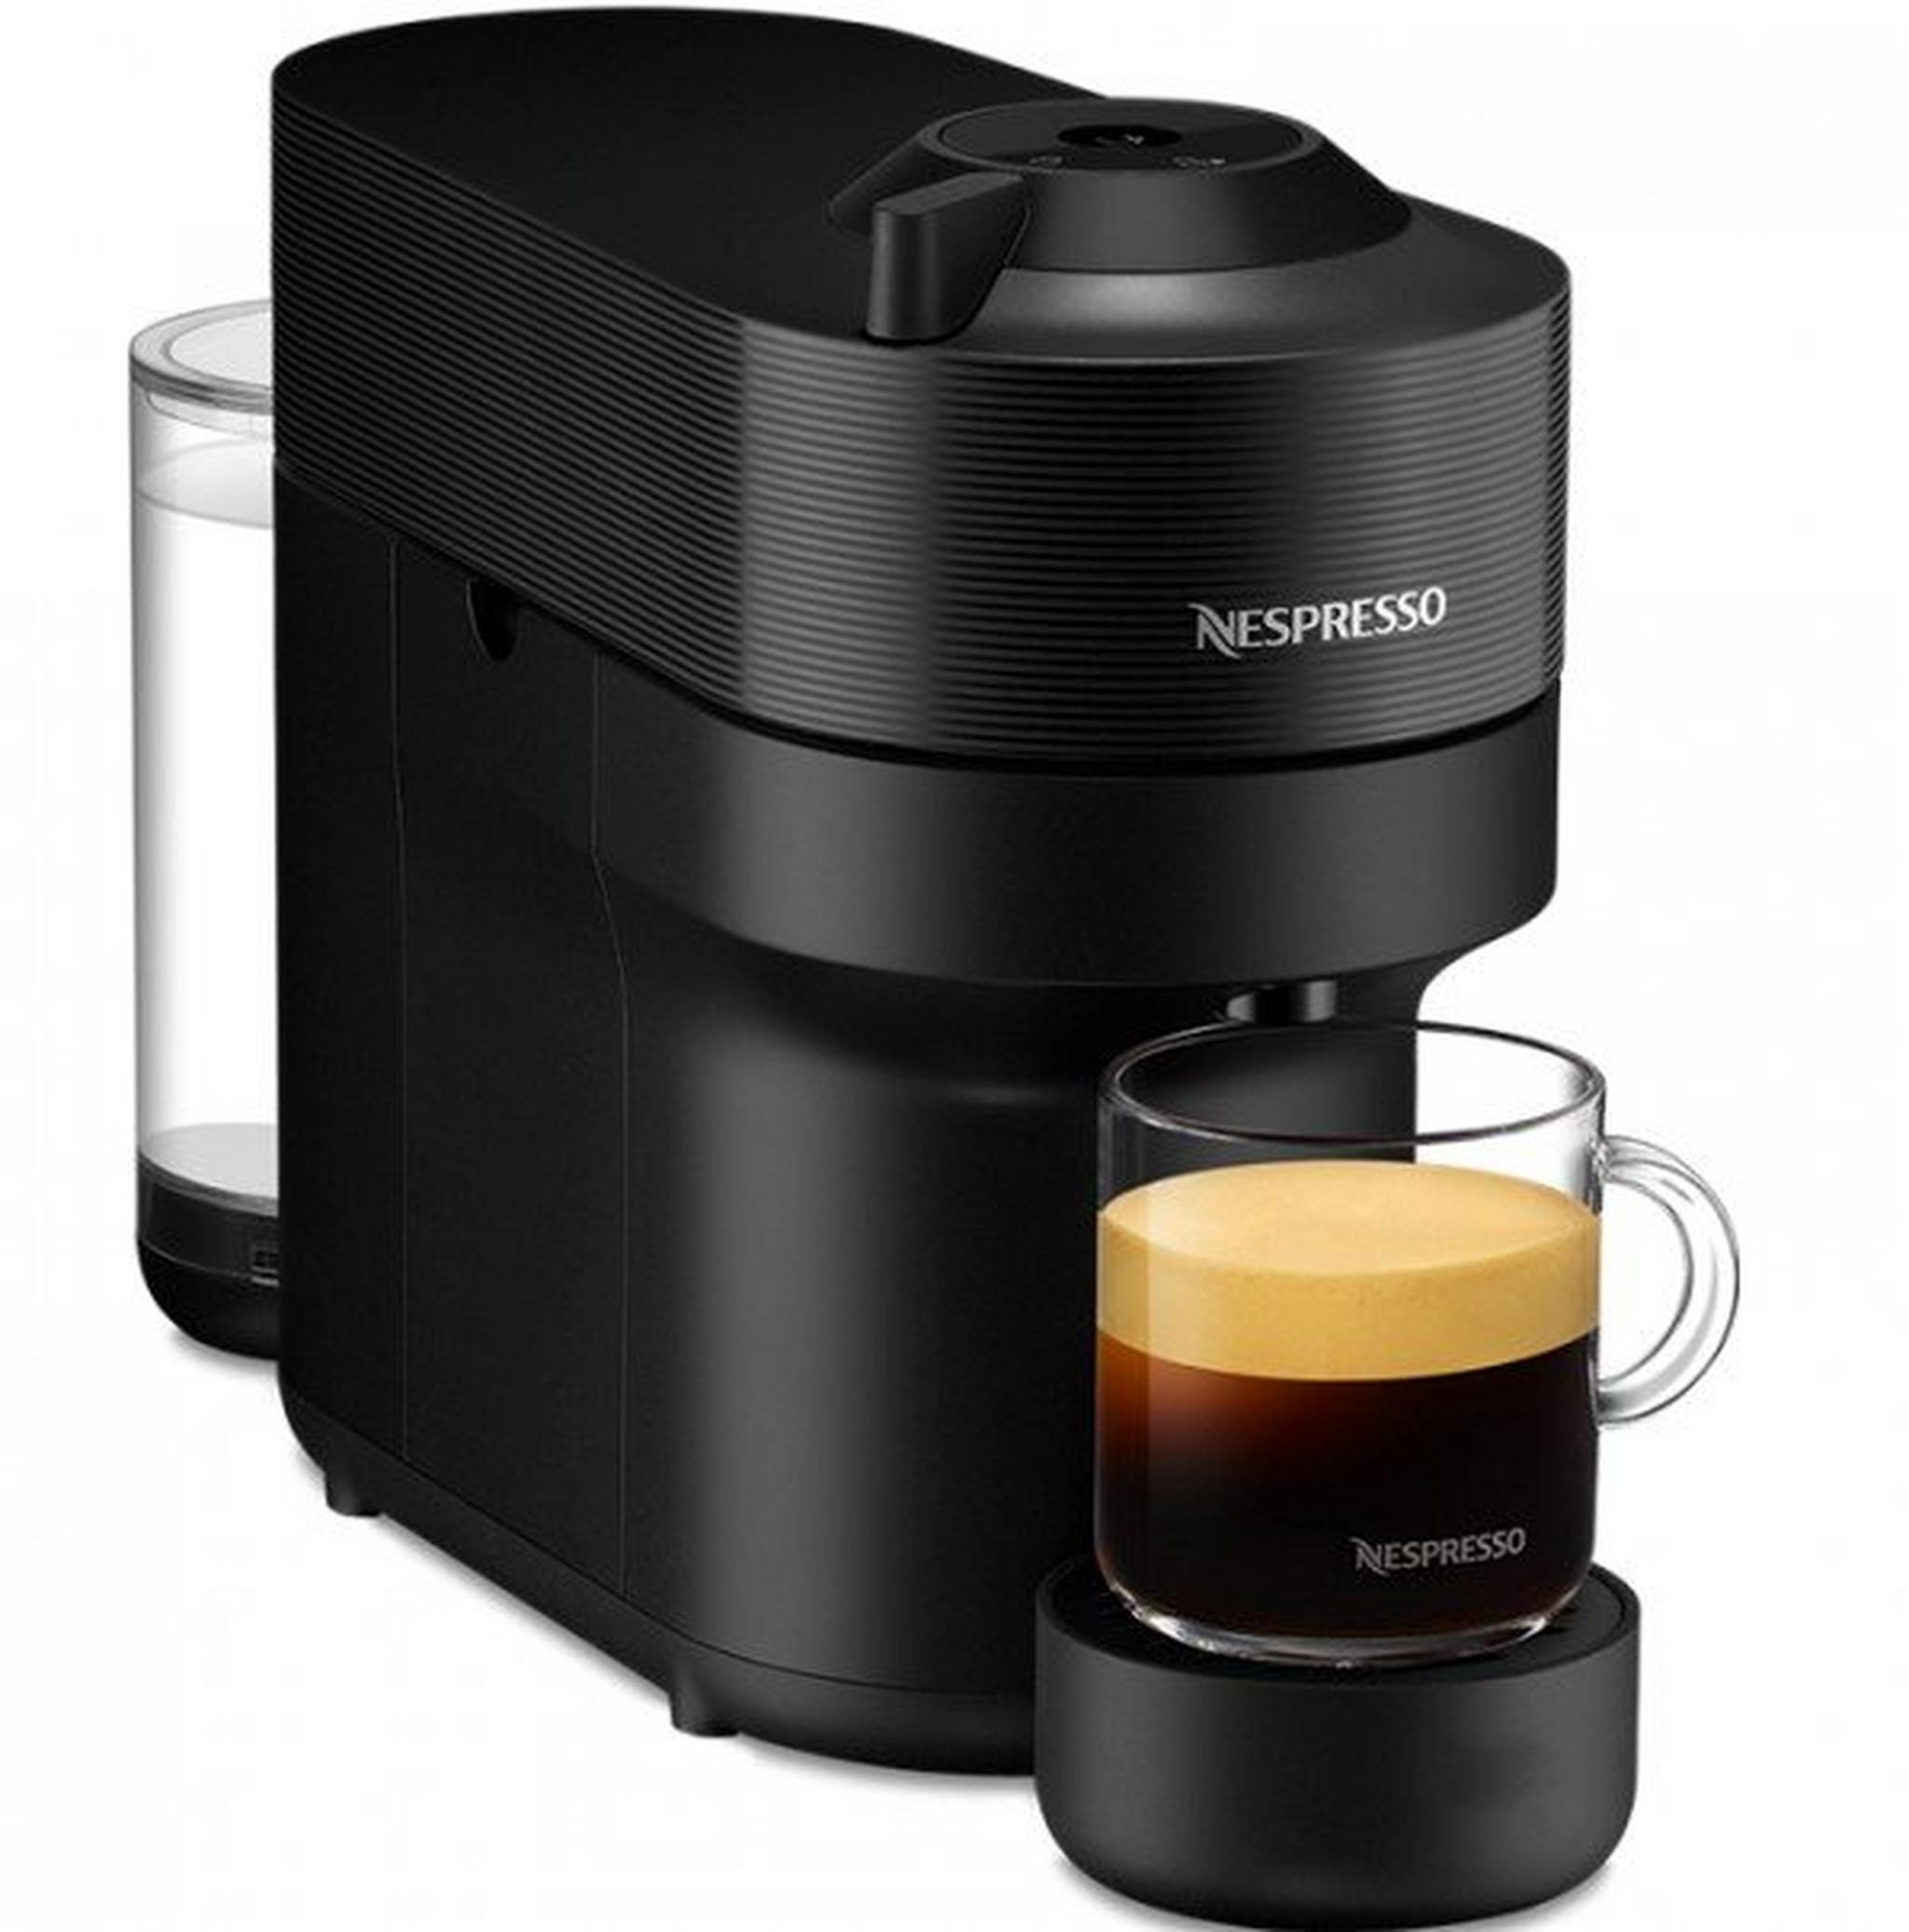 ماكينة تحضير القهوة فيرتو بوب من نسبريسو، قدرة 1260 واط، سعة 0.6 لتر، GDV2-GB-BK-NE - أسود